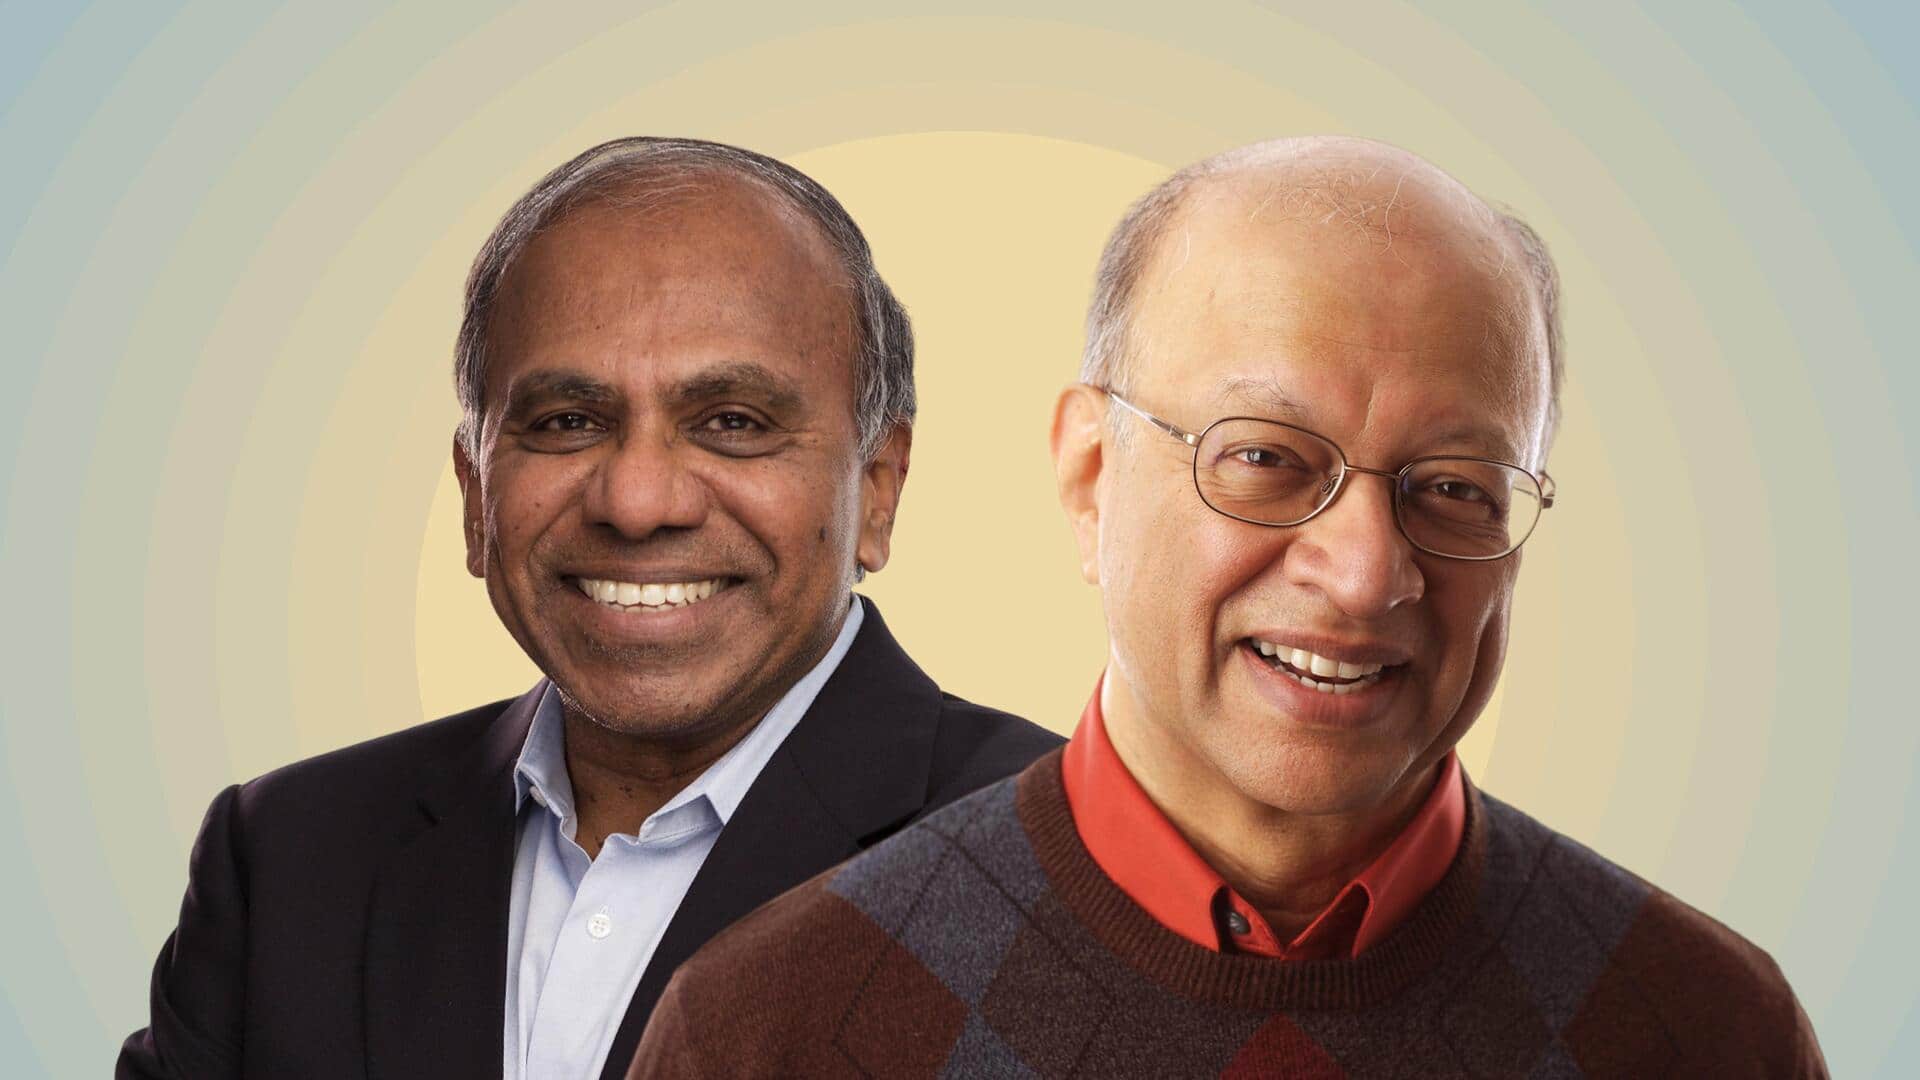 कौन हैं अशोक गाडगिल और सुब्रा सुरेश, जिन्हें मिला अमेरिका का सर्वोच्च वैज्ञानिक पुरस्कार?